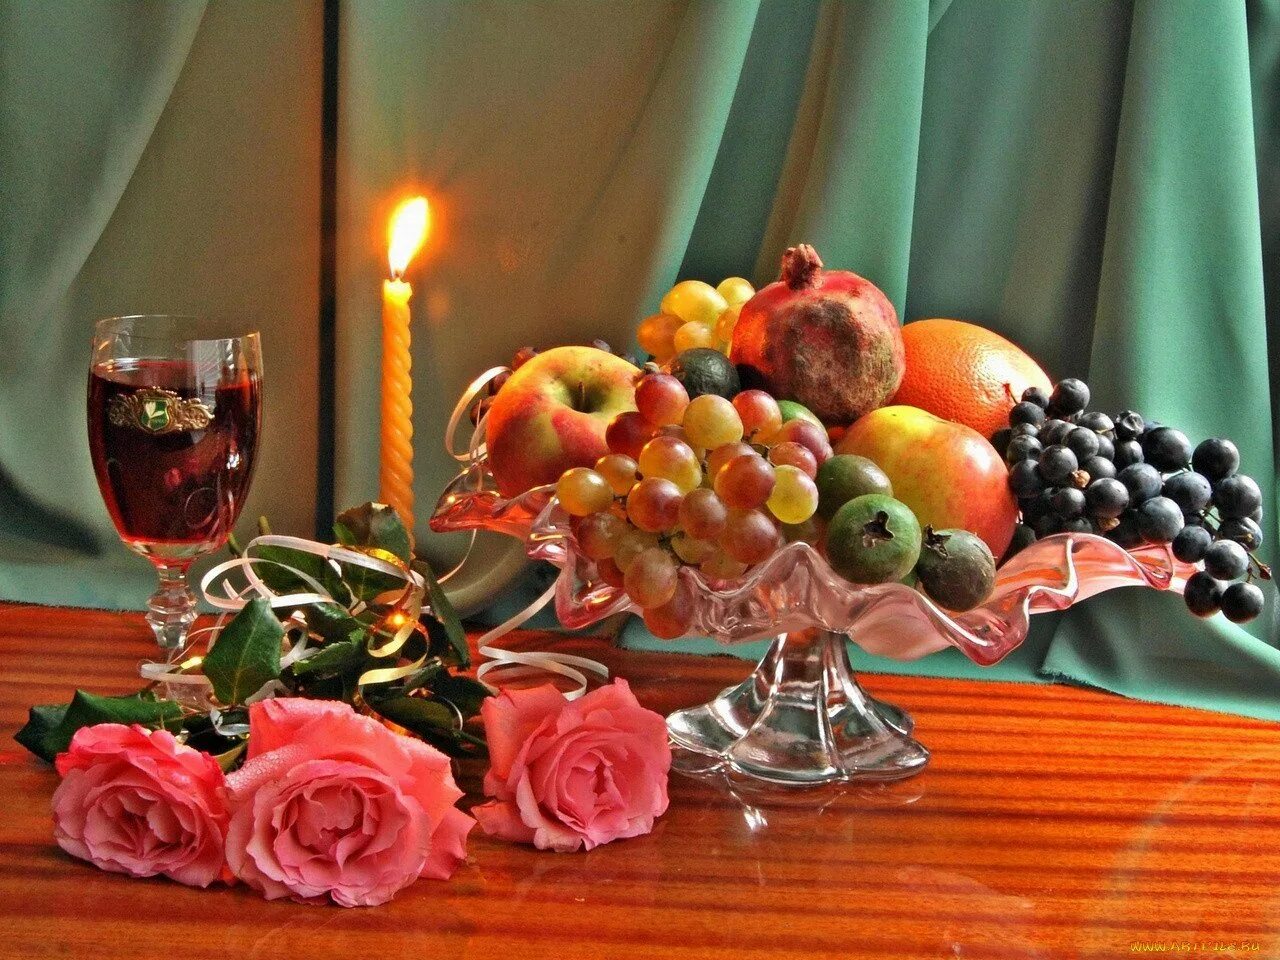 Картинки добрый вечер сладкий. Натюрморт добрый вечер. Натюрморт с вином и фруктами. Фрукты в вазе на столе. Натюрморт с фруктами вином и свечами.